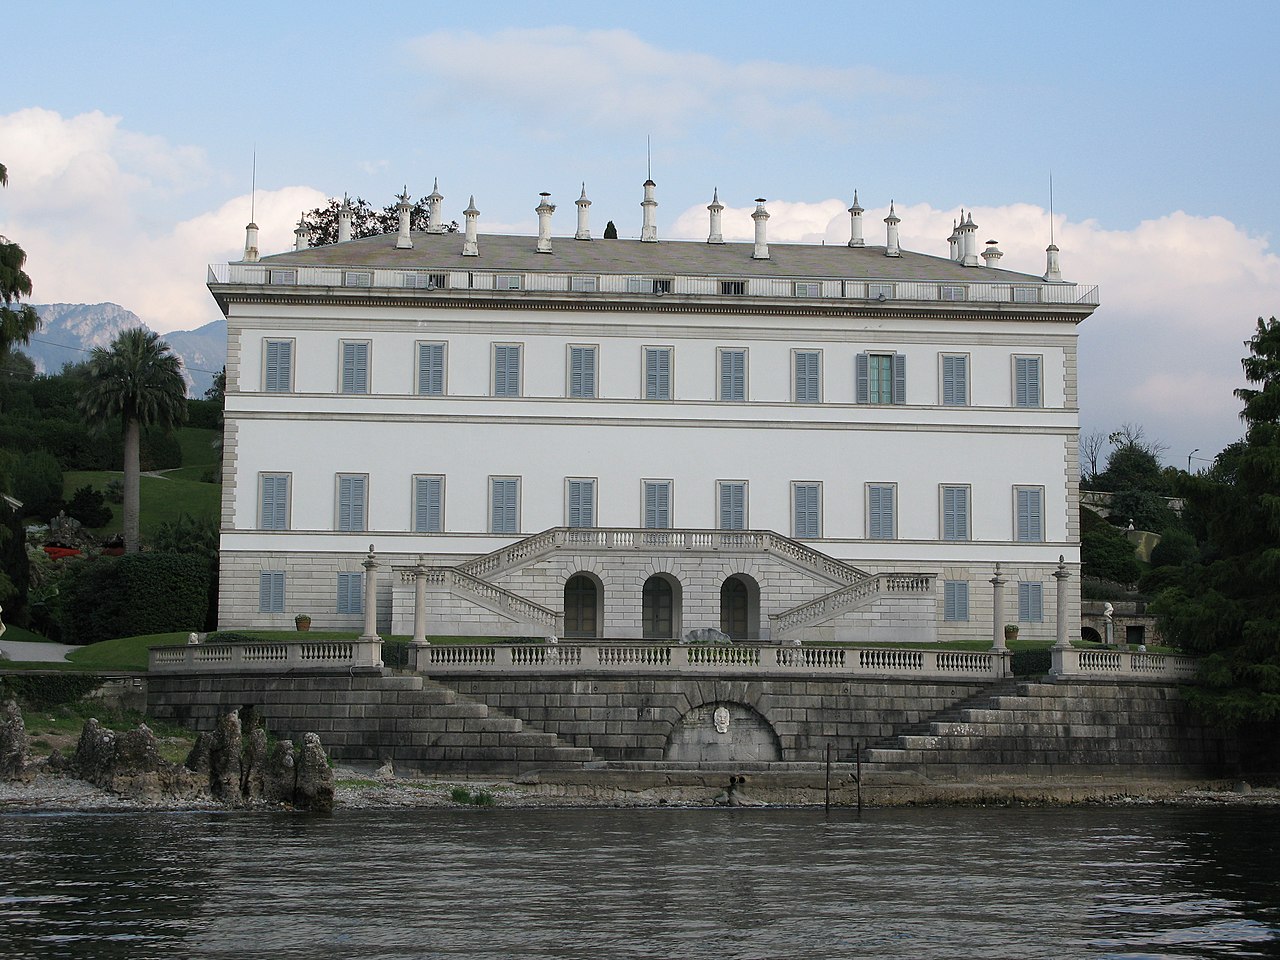 Villa Melzi d'Eril